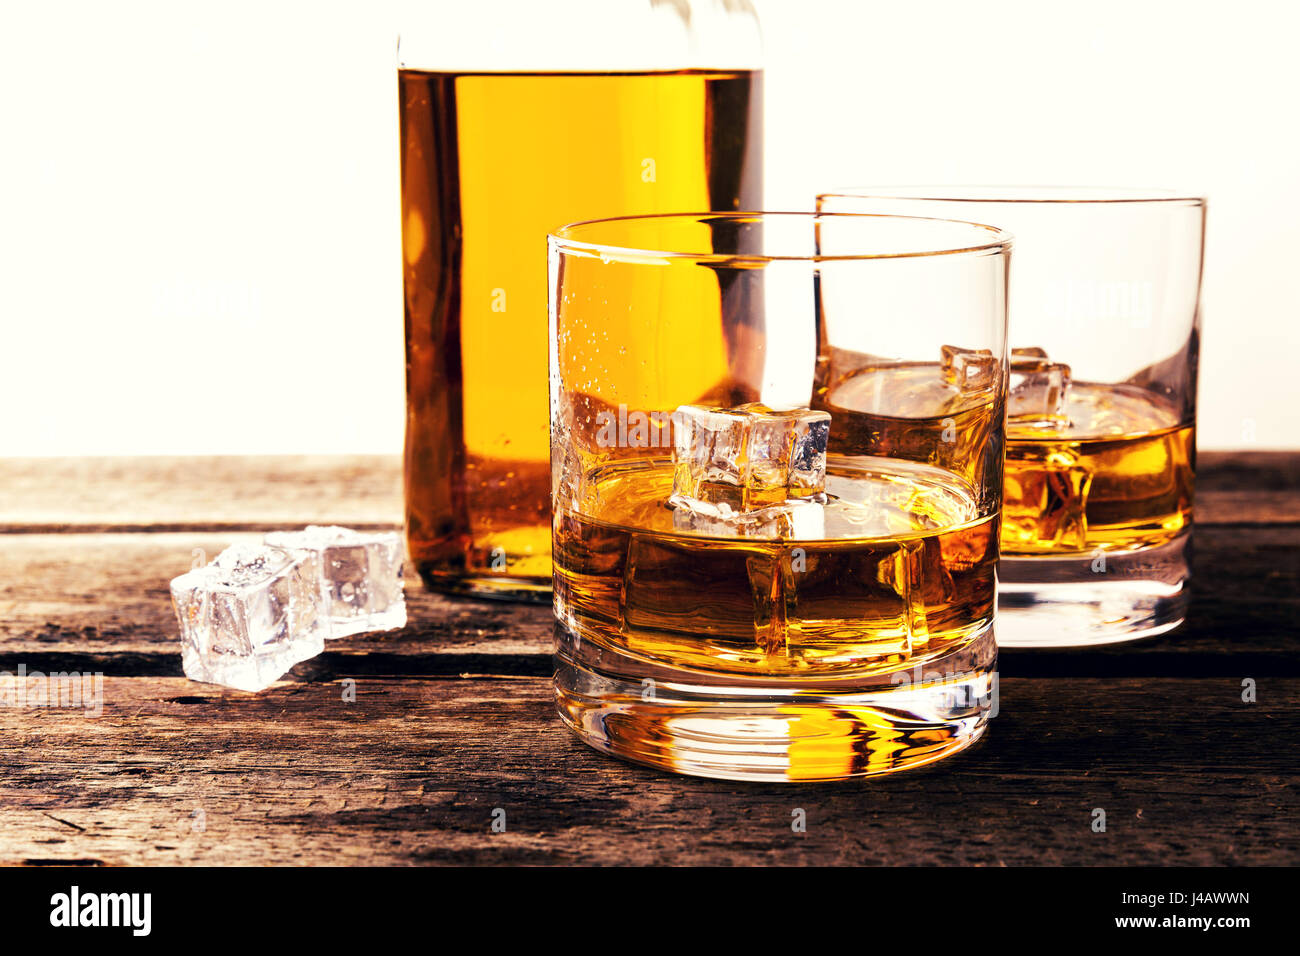 Bicchieri di whiskey e la bottiglia sul tavolo di legno contro uno sfondo bianco Foto Stock